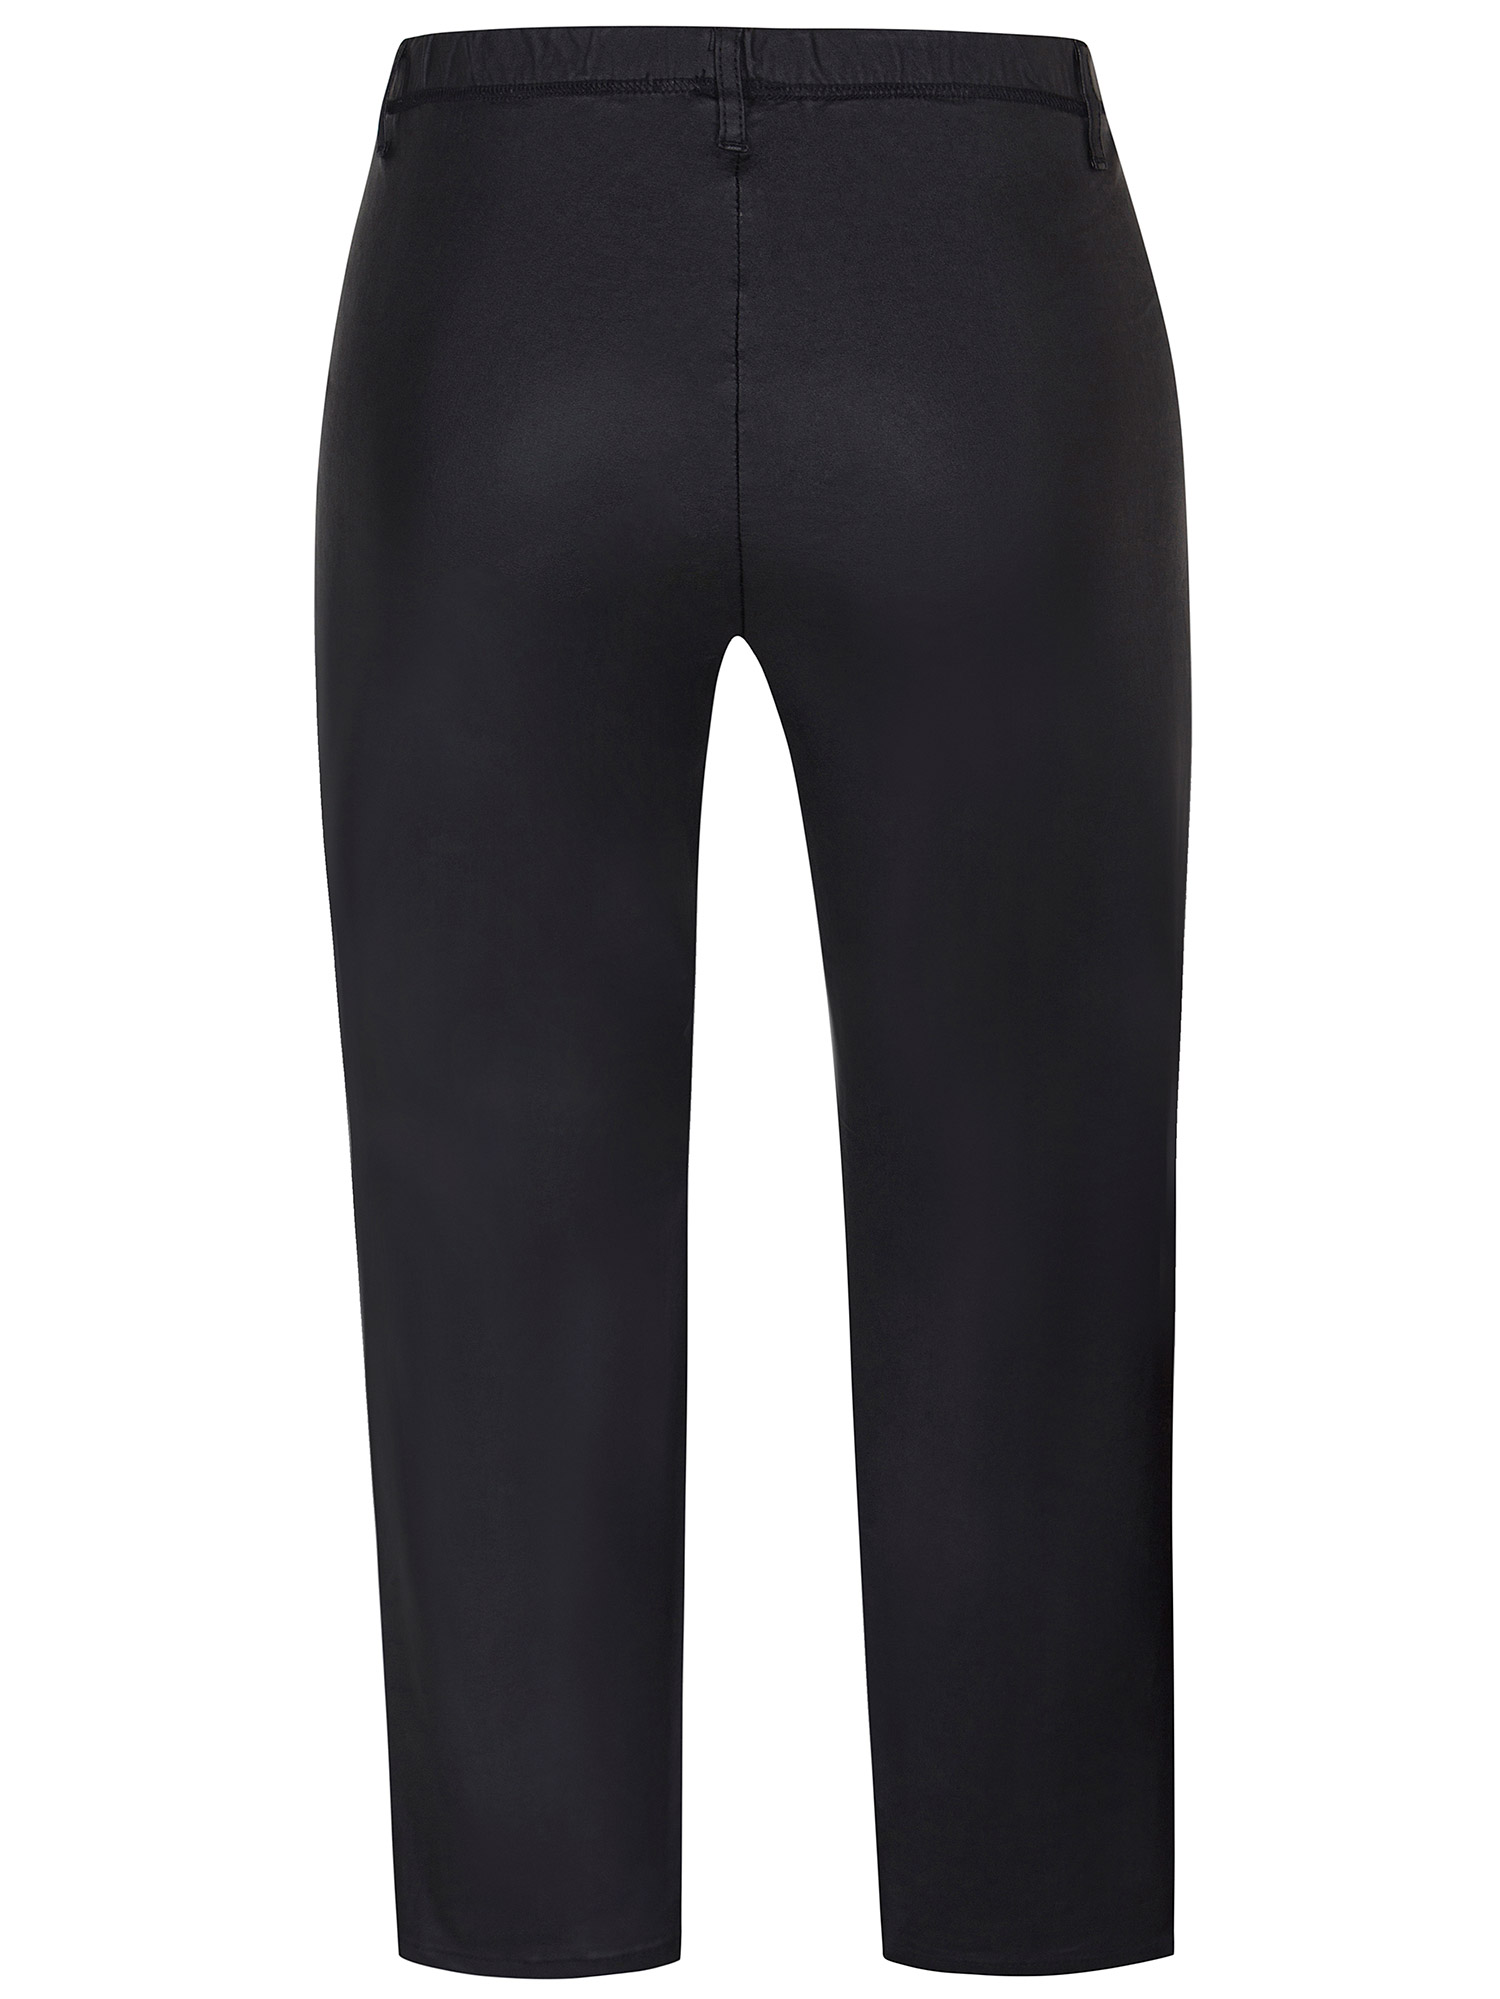 TWIST - Svarte leggings med lommer i skinnlook  fra Zhenzi